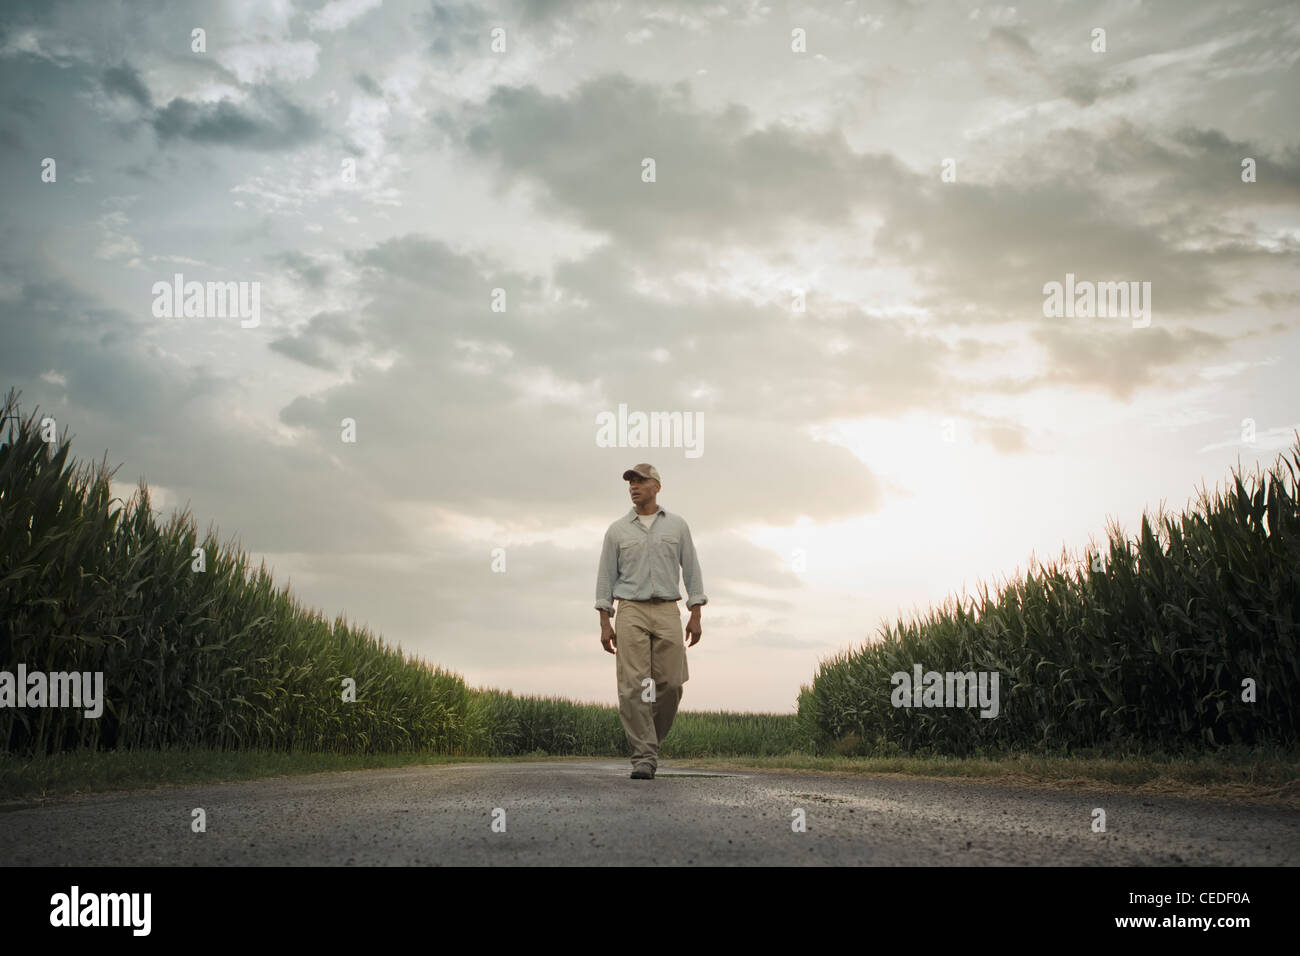 Agricultor americano africano caminando por carretera a través de los cultivos Foto de stock